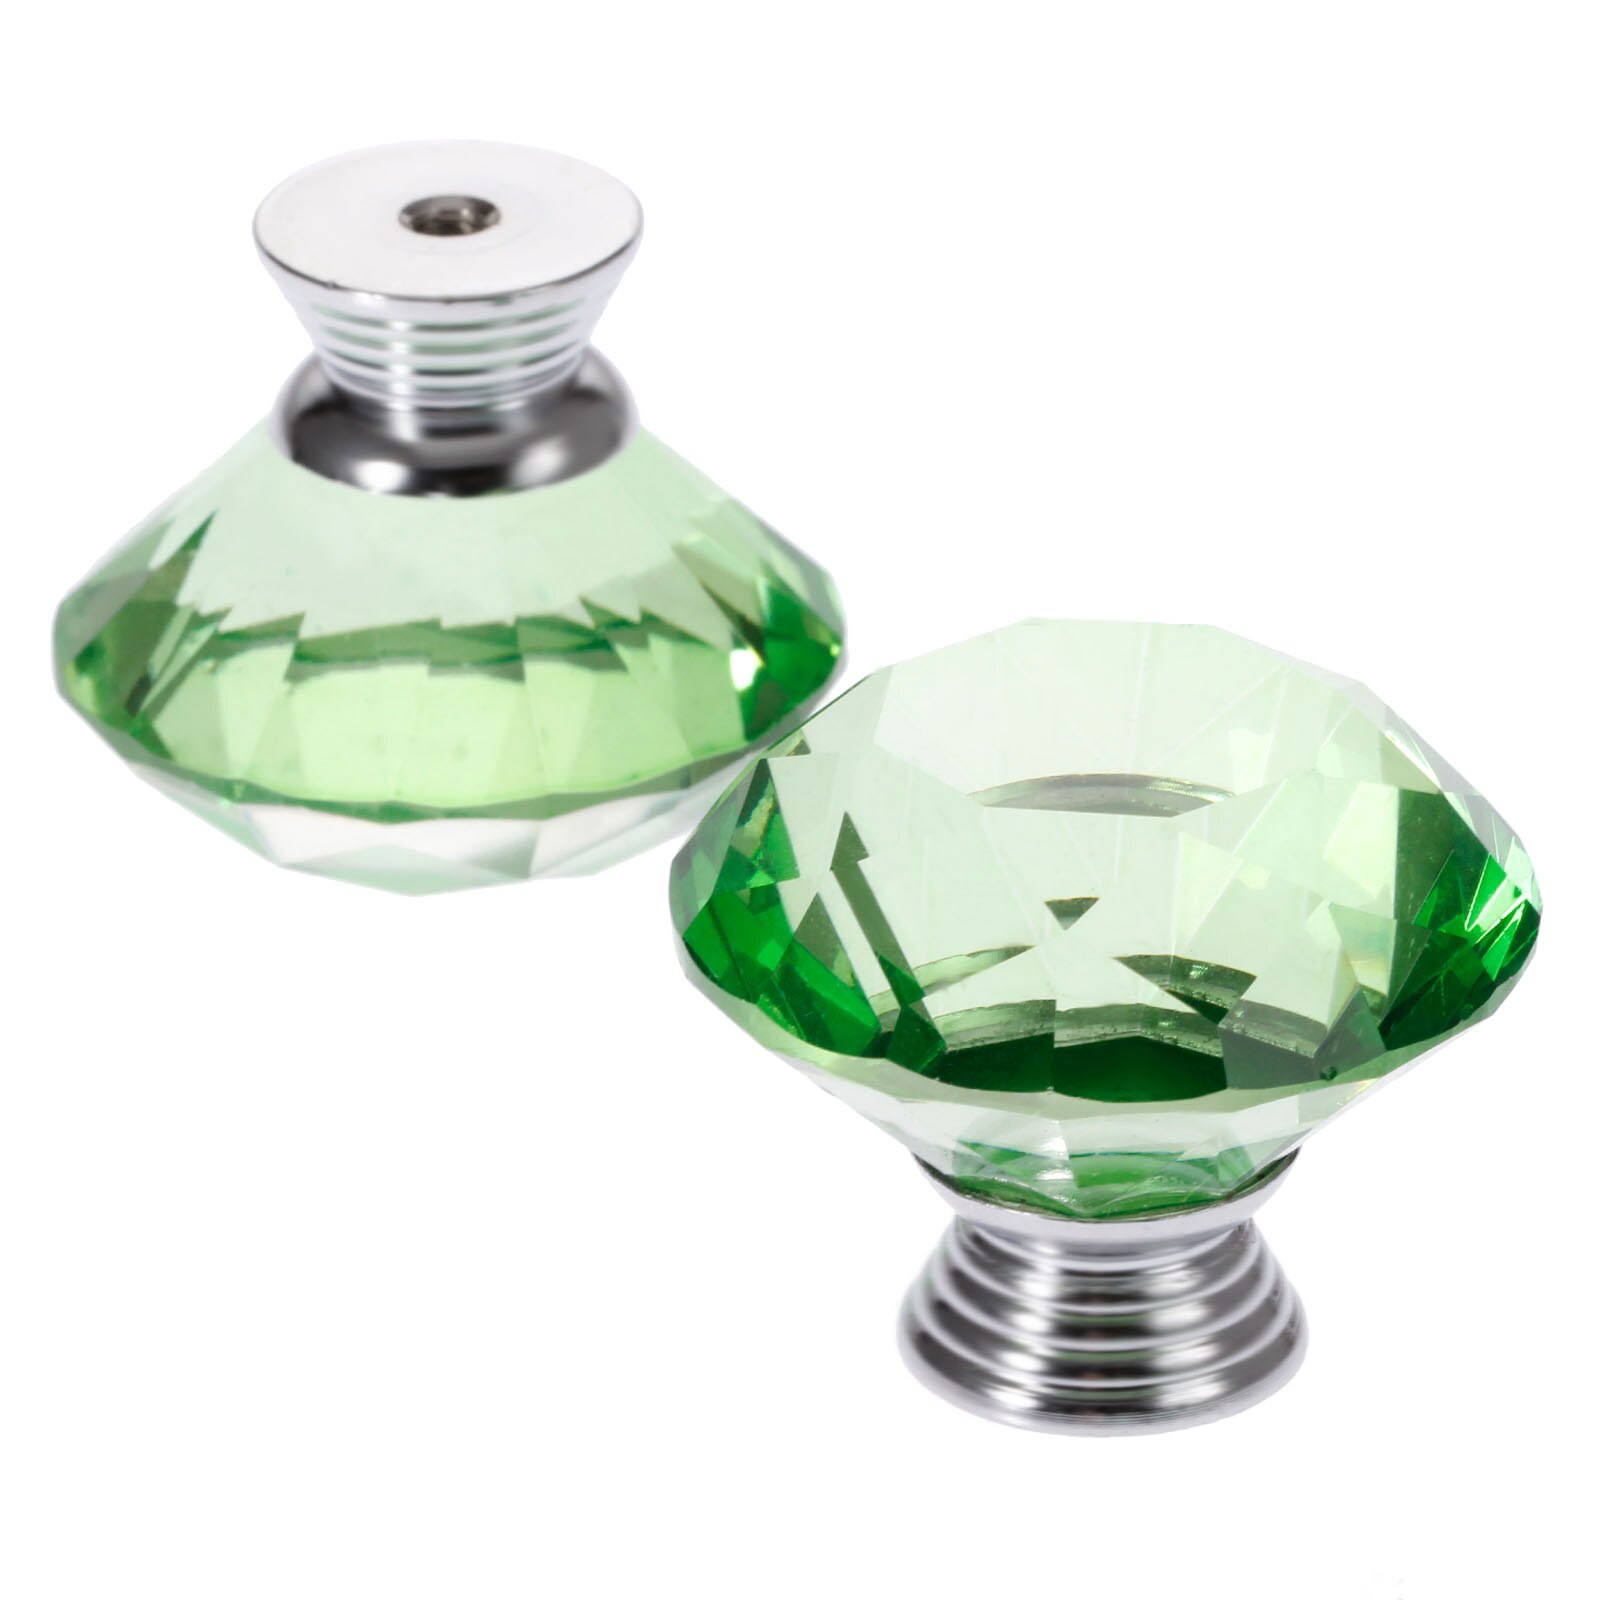 1x grønne 40mm diamantformede krystalglas knopper garderobeskab træk køkkenskabsskuffe dørhåndtag